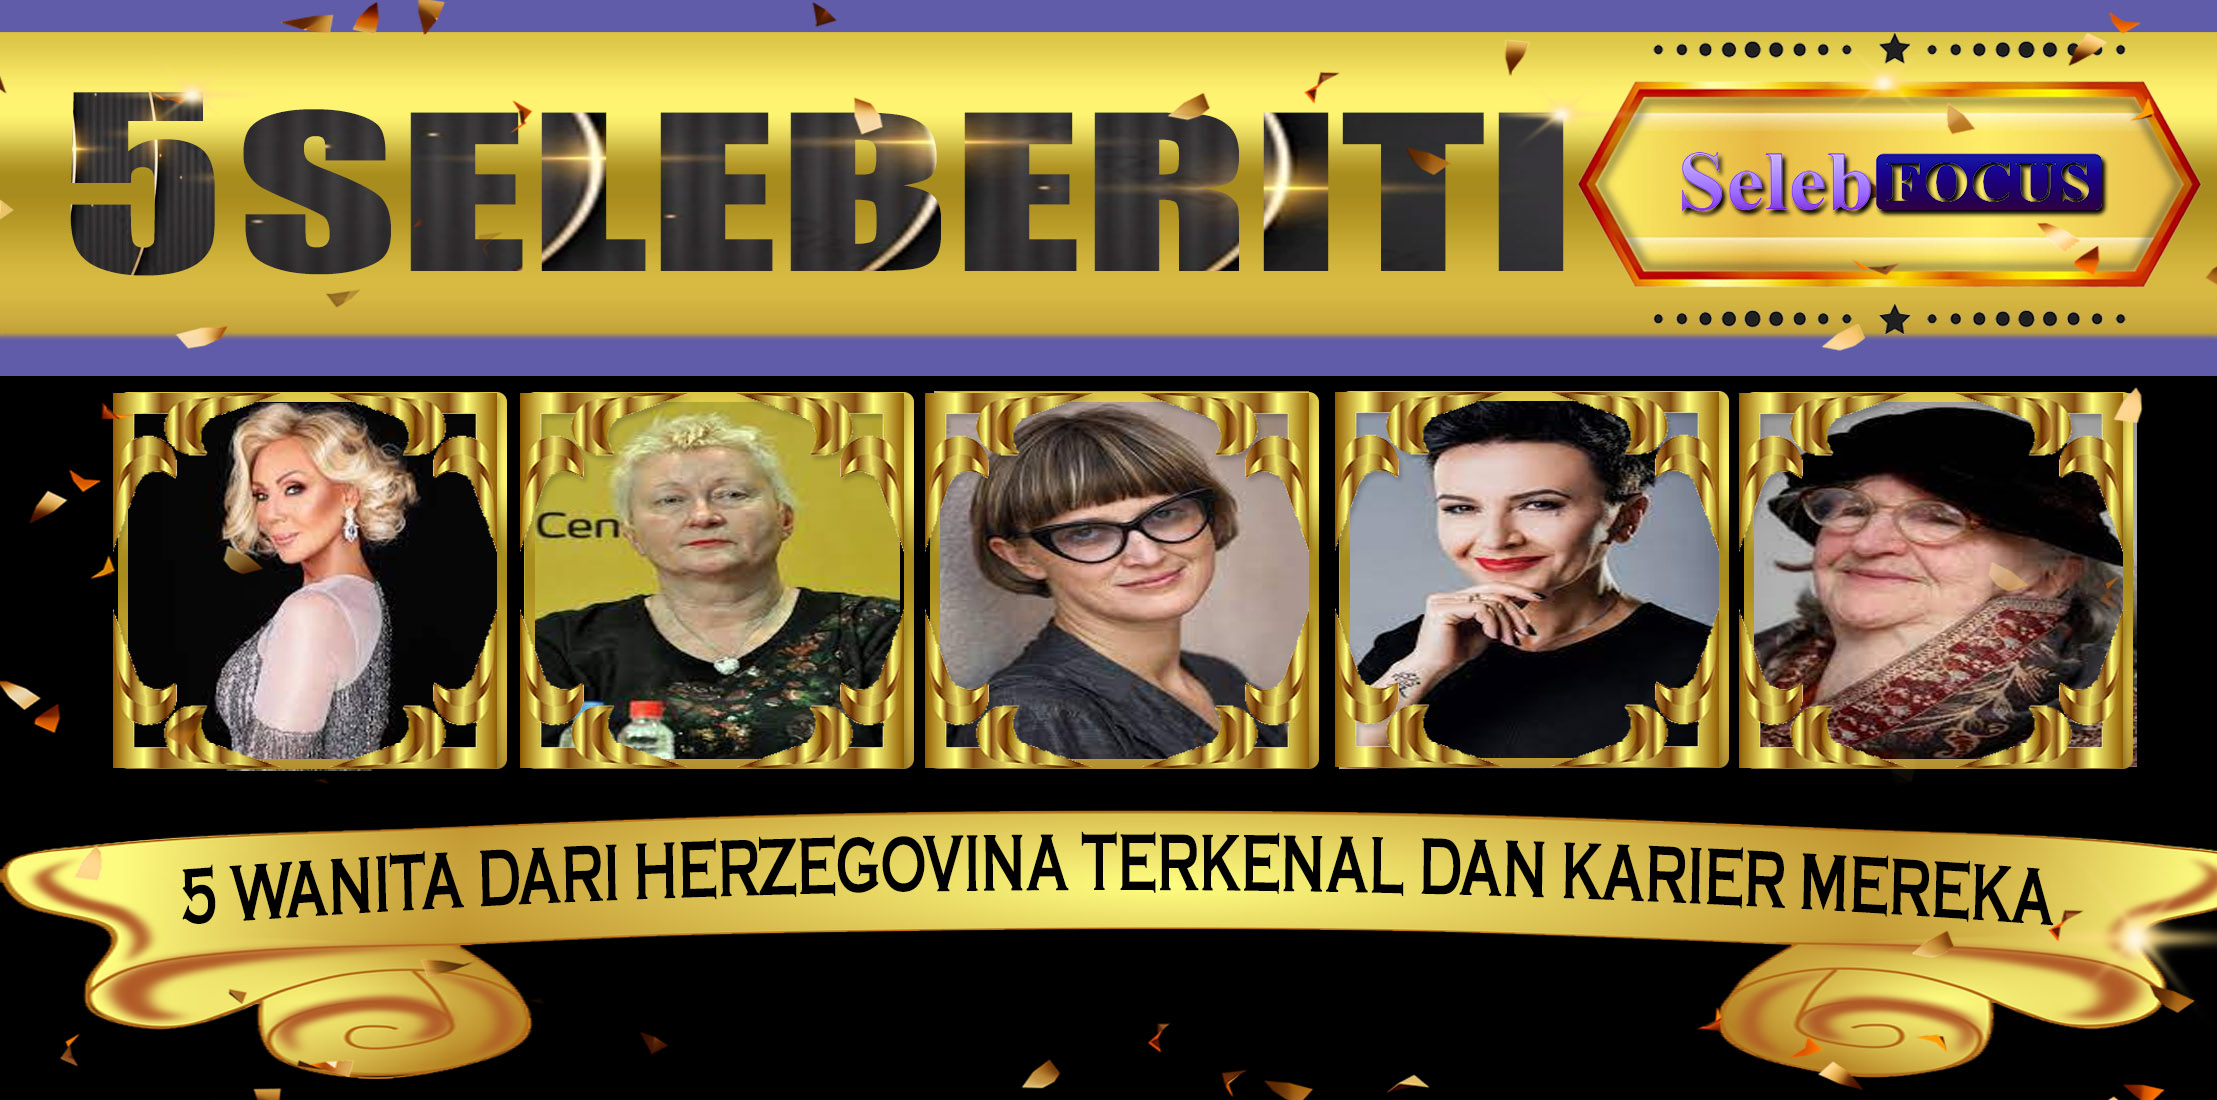 5 Wanita dari Herzegovina Terkenal dan Karier Mereka